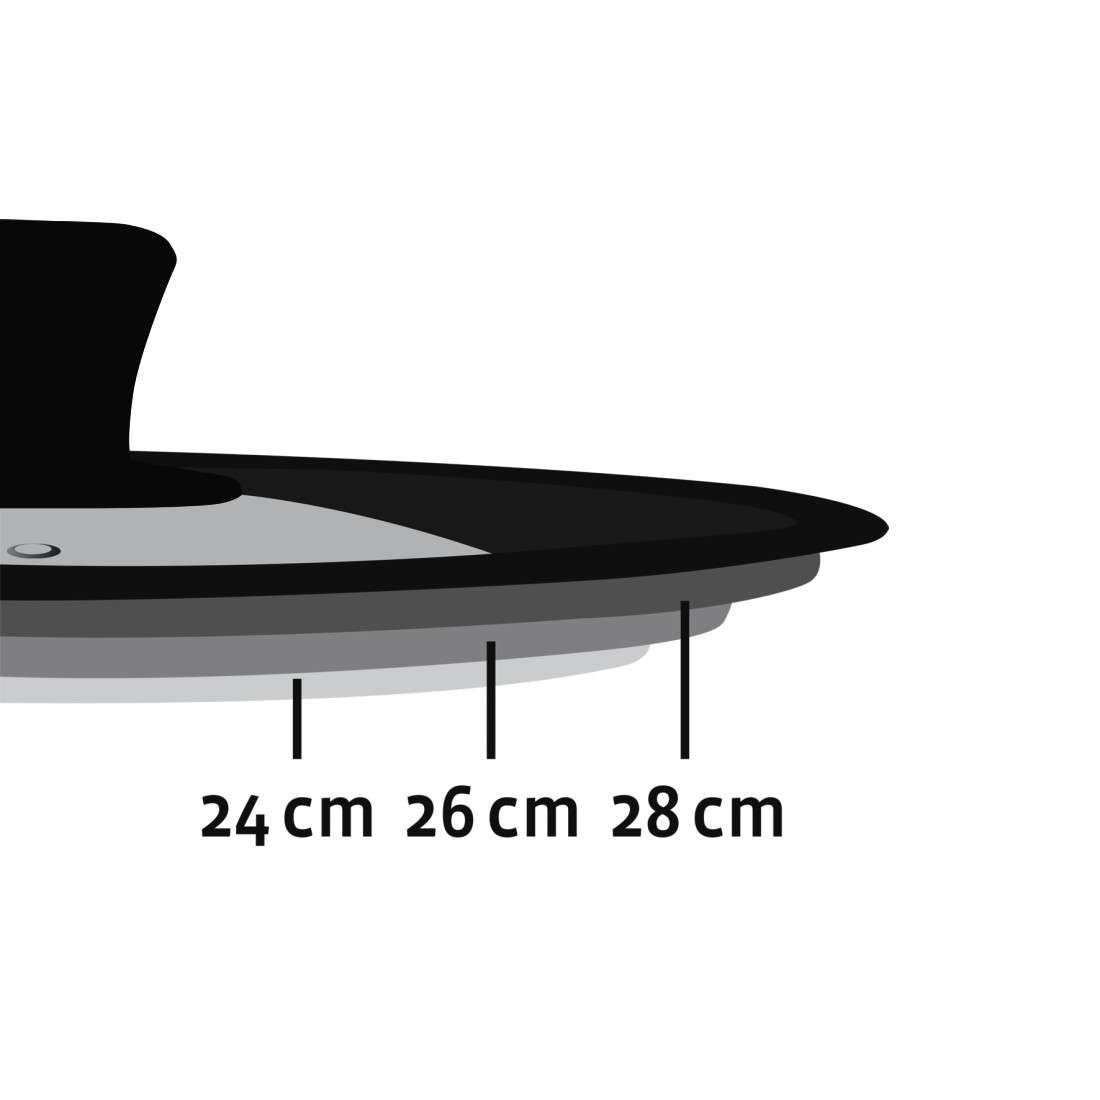 Universaldeckel mit Dampfloch für Töpfe und Pfannen, 24, 26, 28 cm, Glas